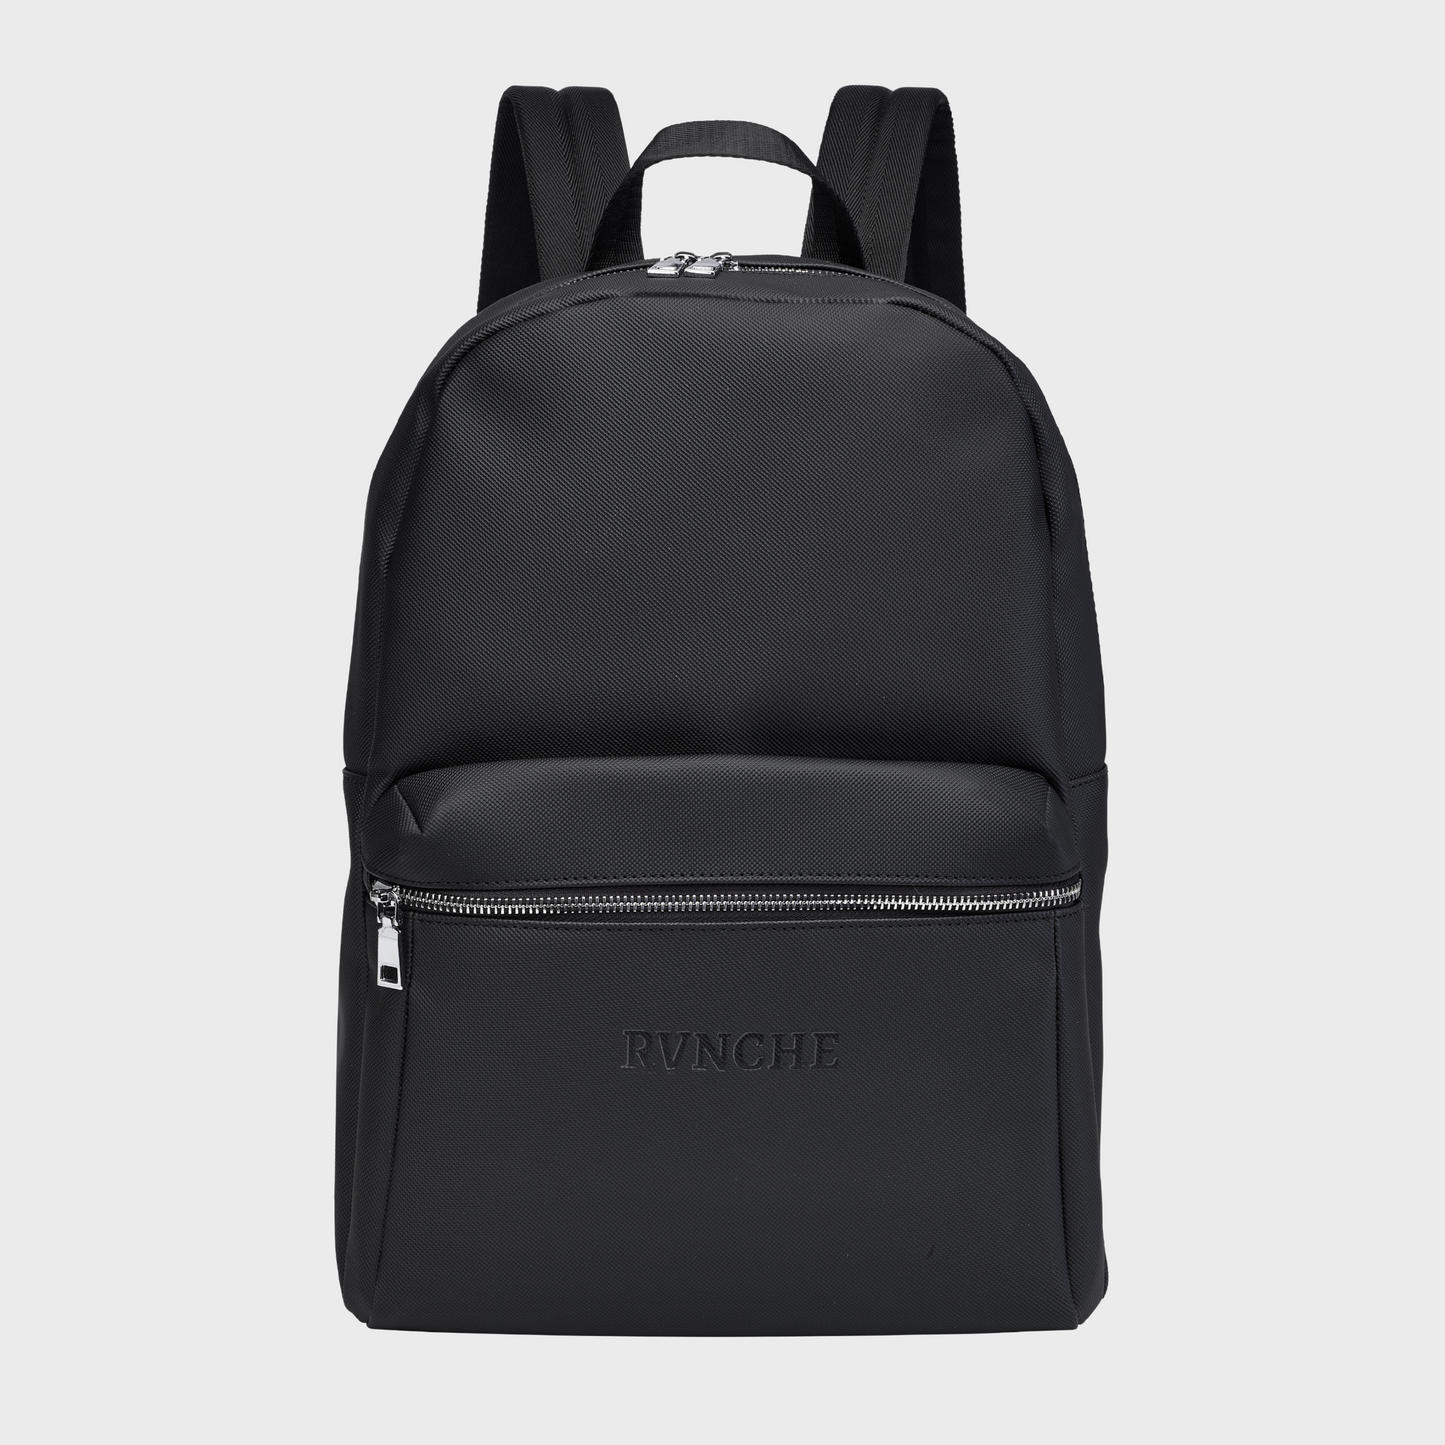 Backpack Black - Vénice